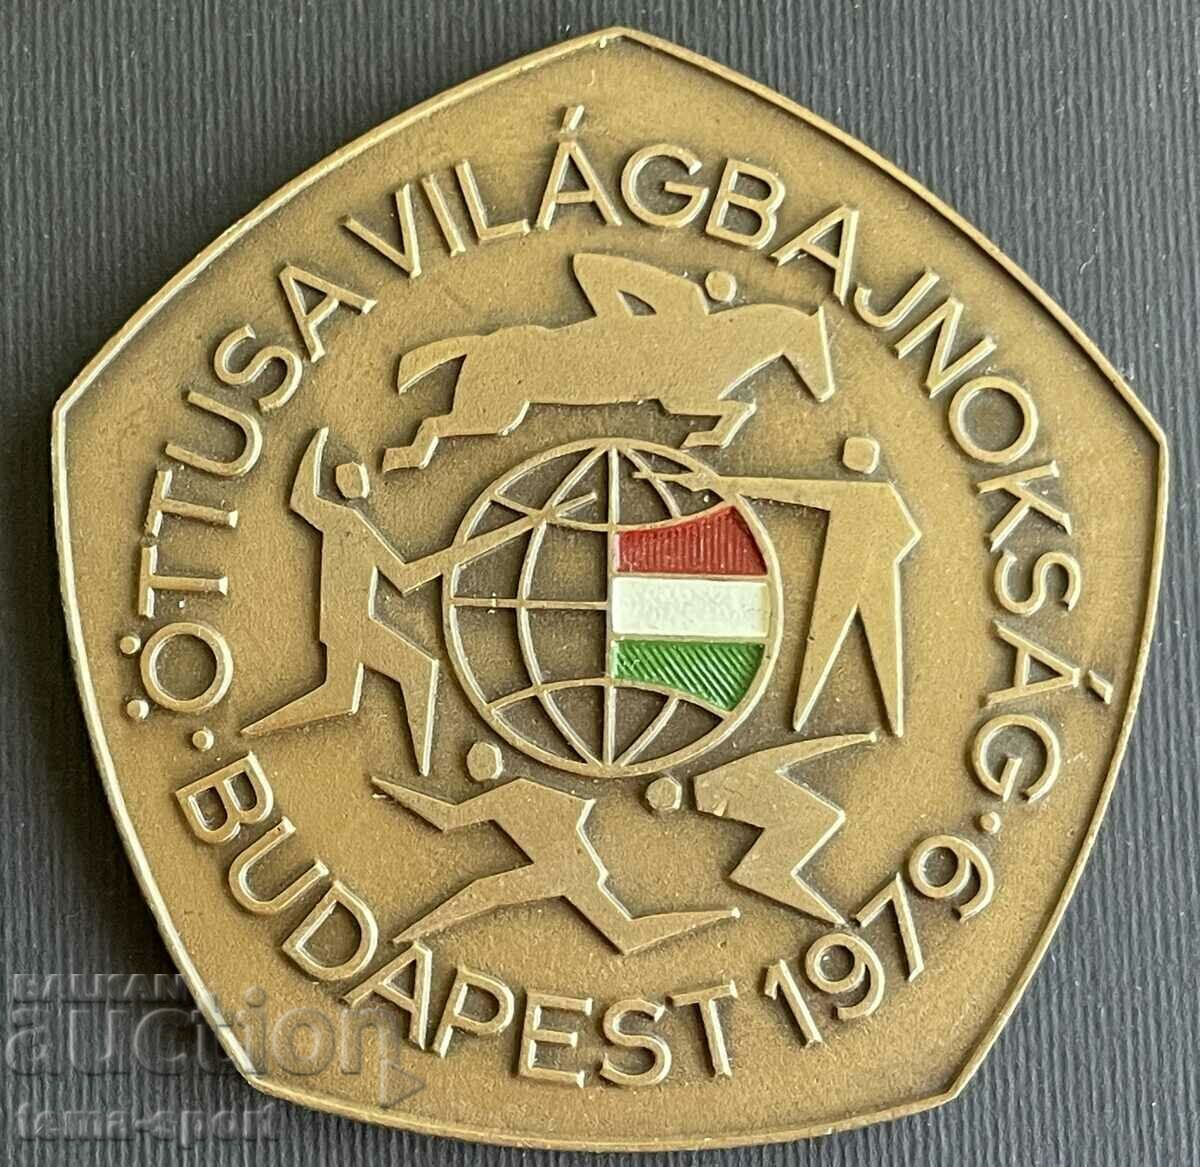 22 Унгария плакет състезания модерен петобой 1979г.